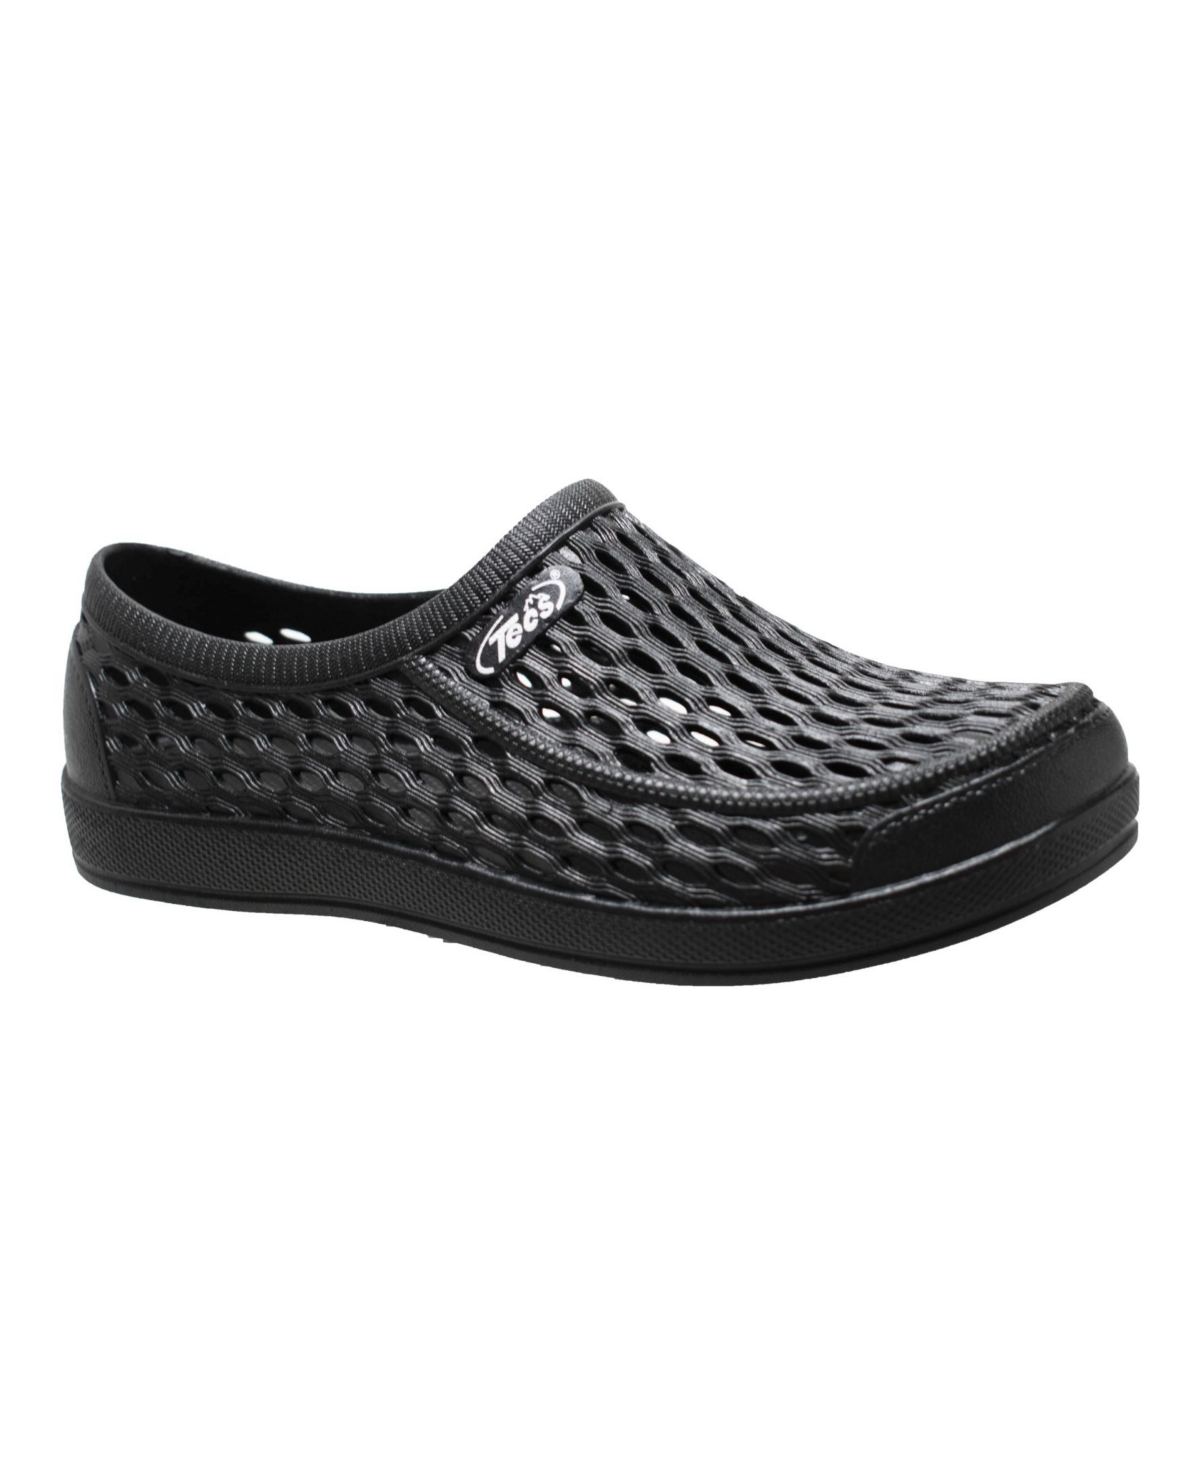 Adtec Men's Relax Aqua Tecs Garden Shoes Men's Shoes In Black